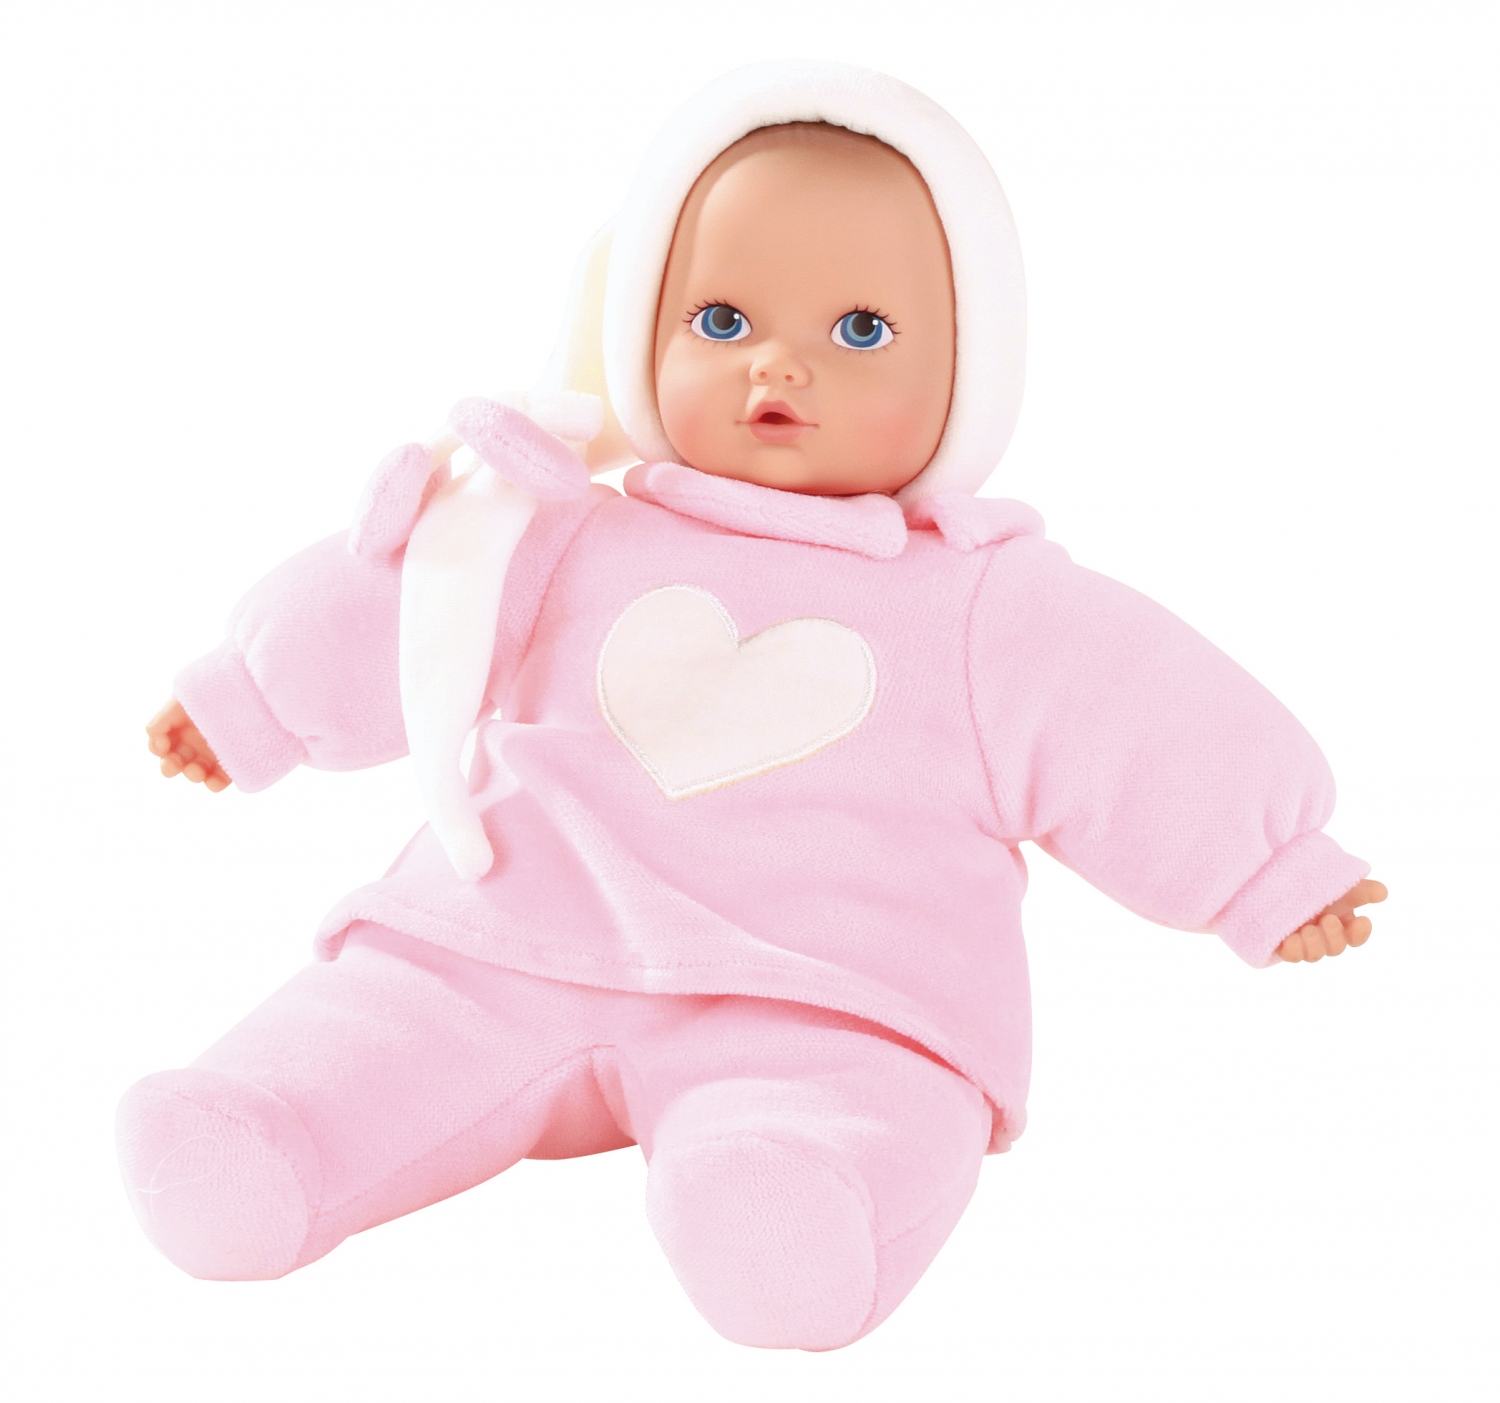 Bedachtzaam Afleiden incompleet Prachtige babypop met zacht lijfje, bestel online